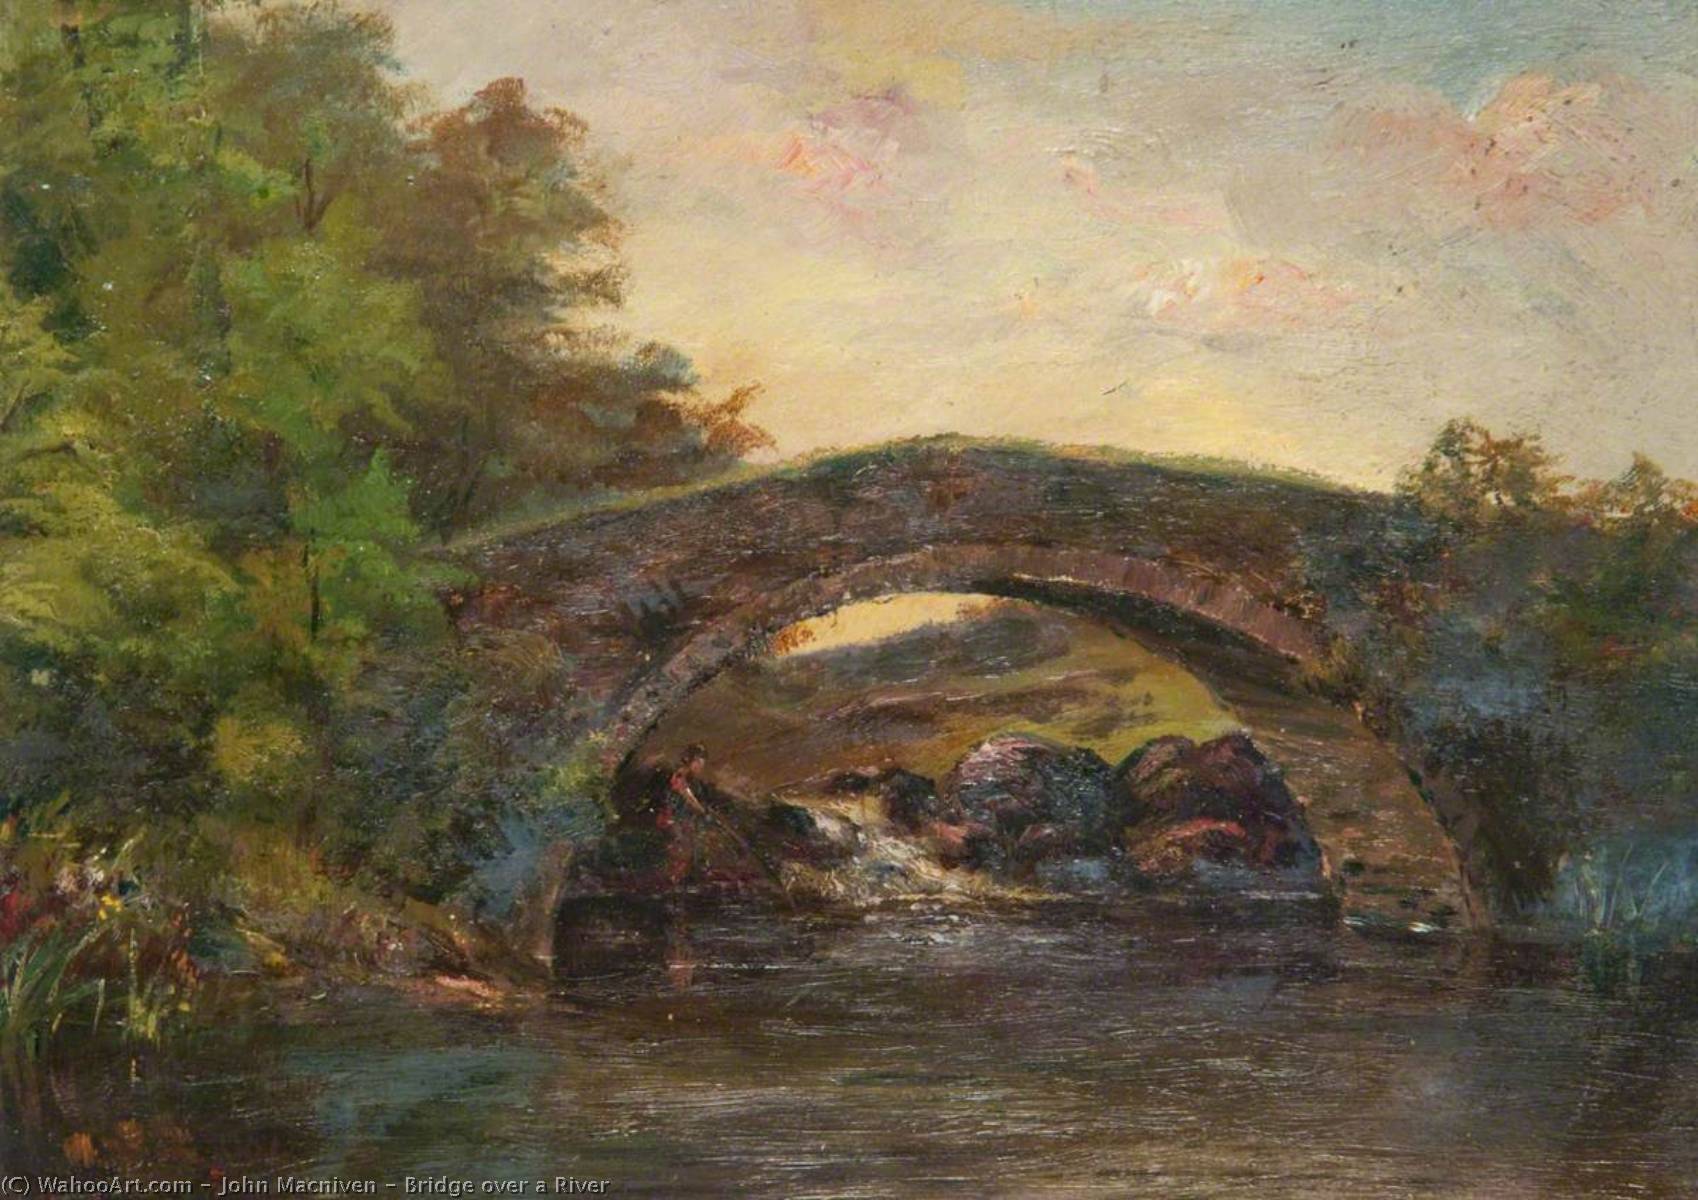 Bridge over a River by John Macniven John Macniven | ArtsDot.com